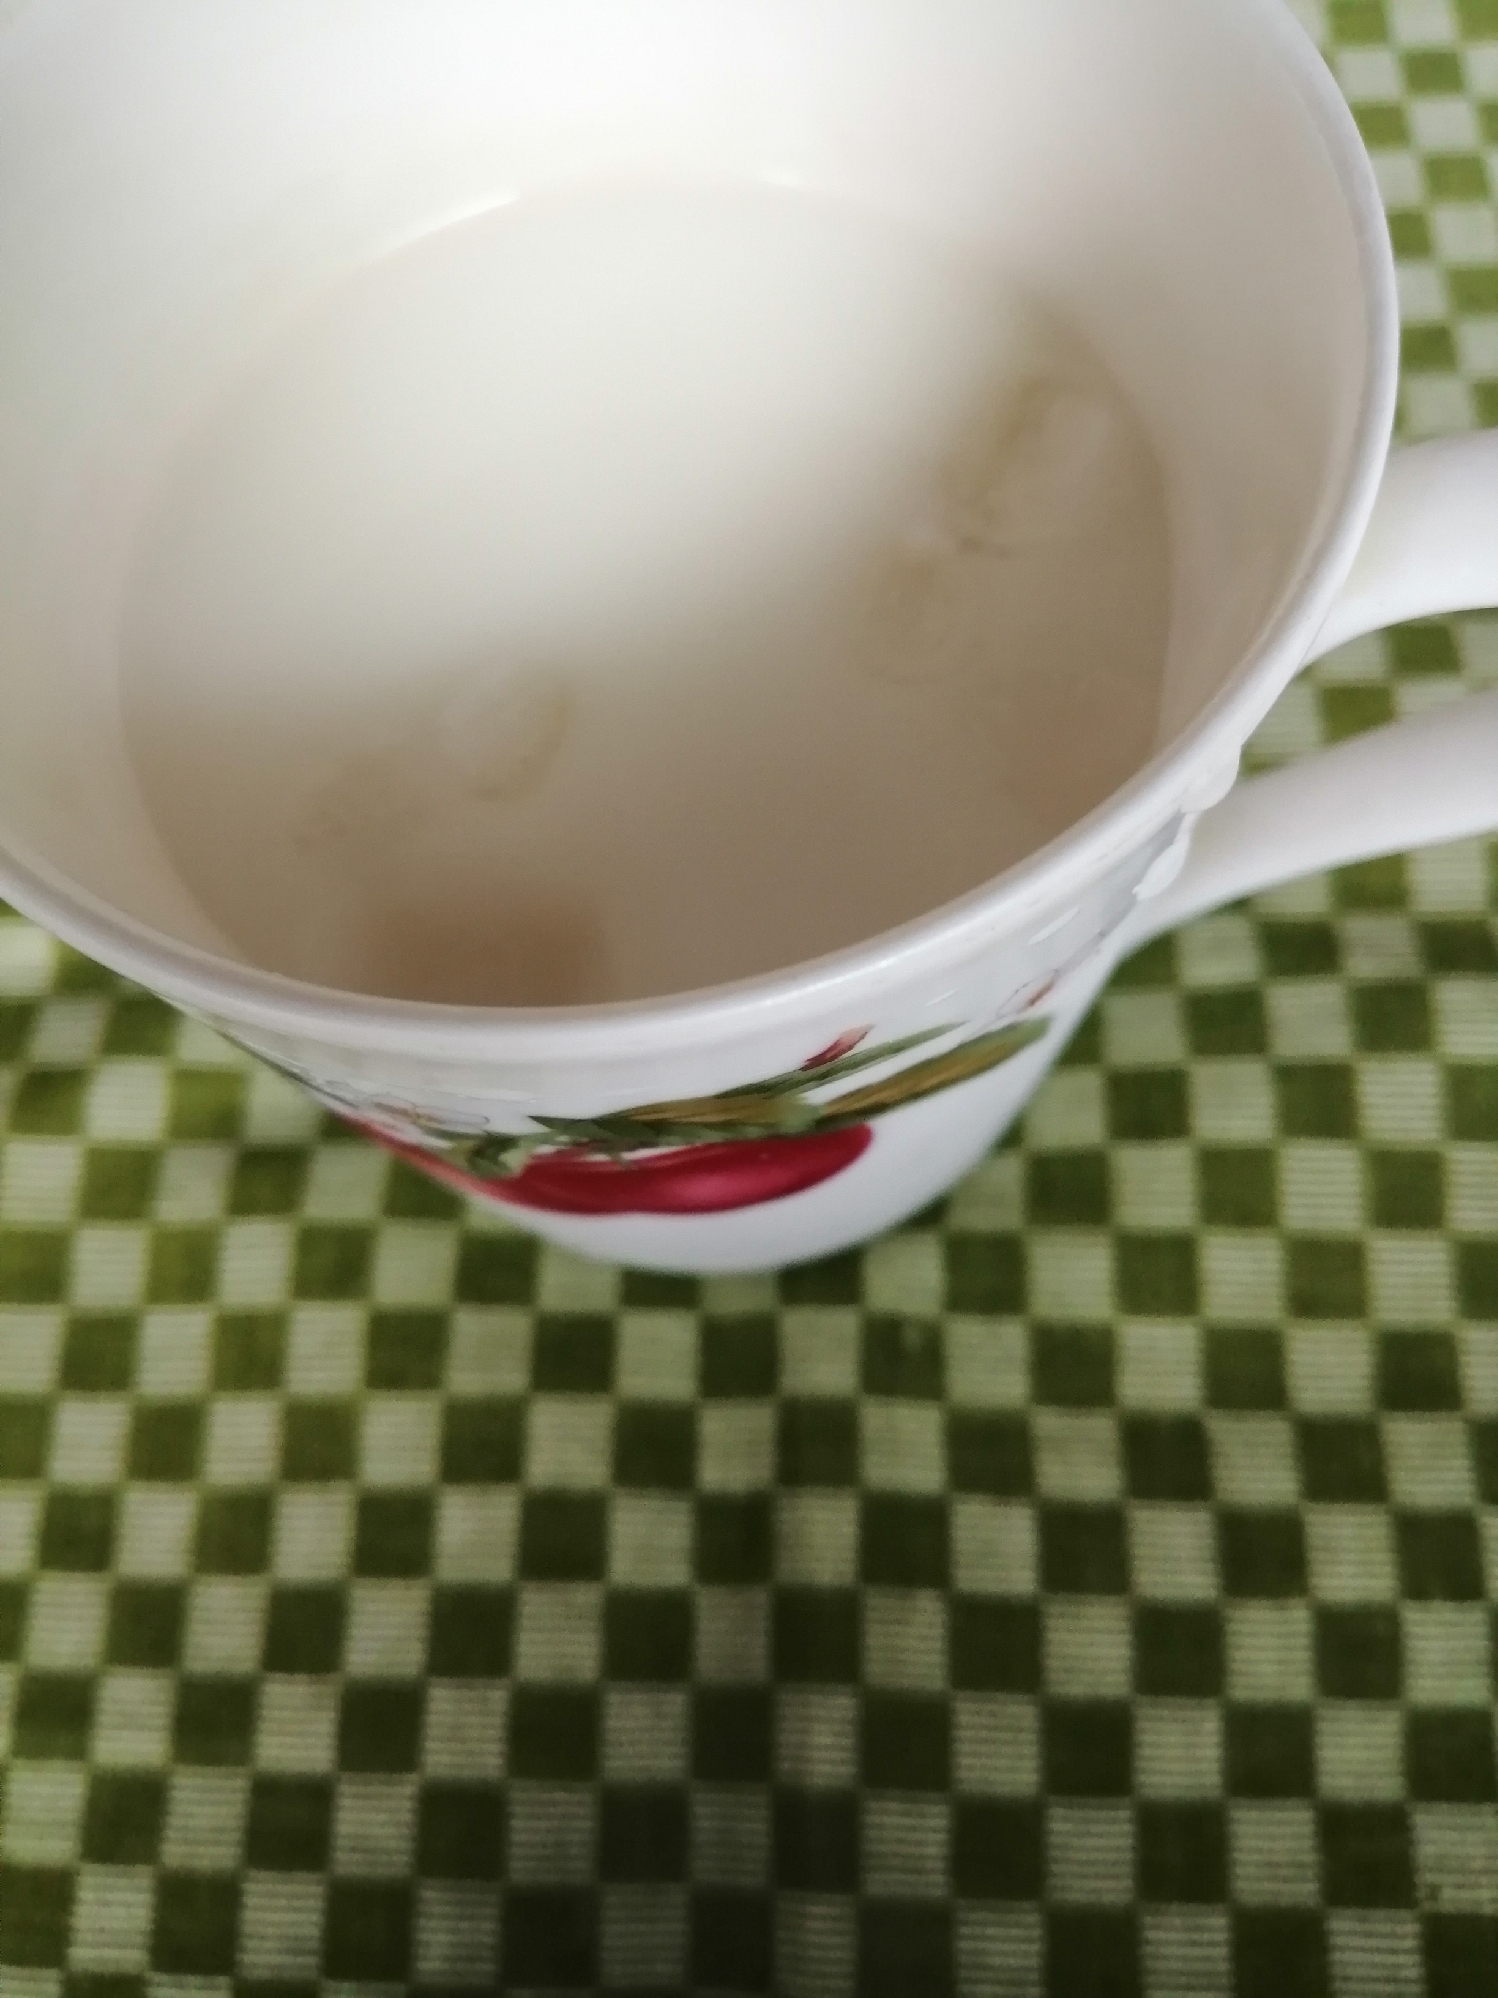 玄米茶ミルクティー